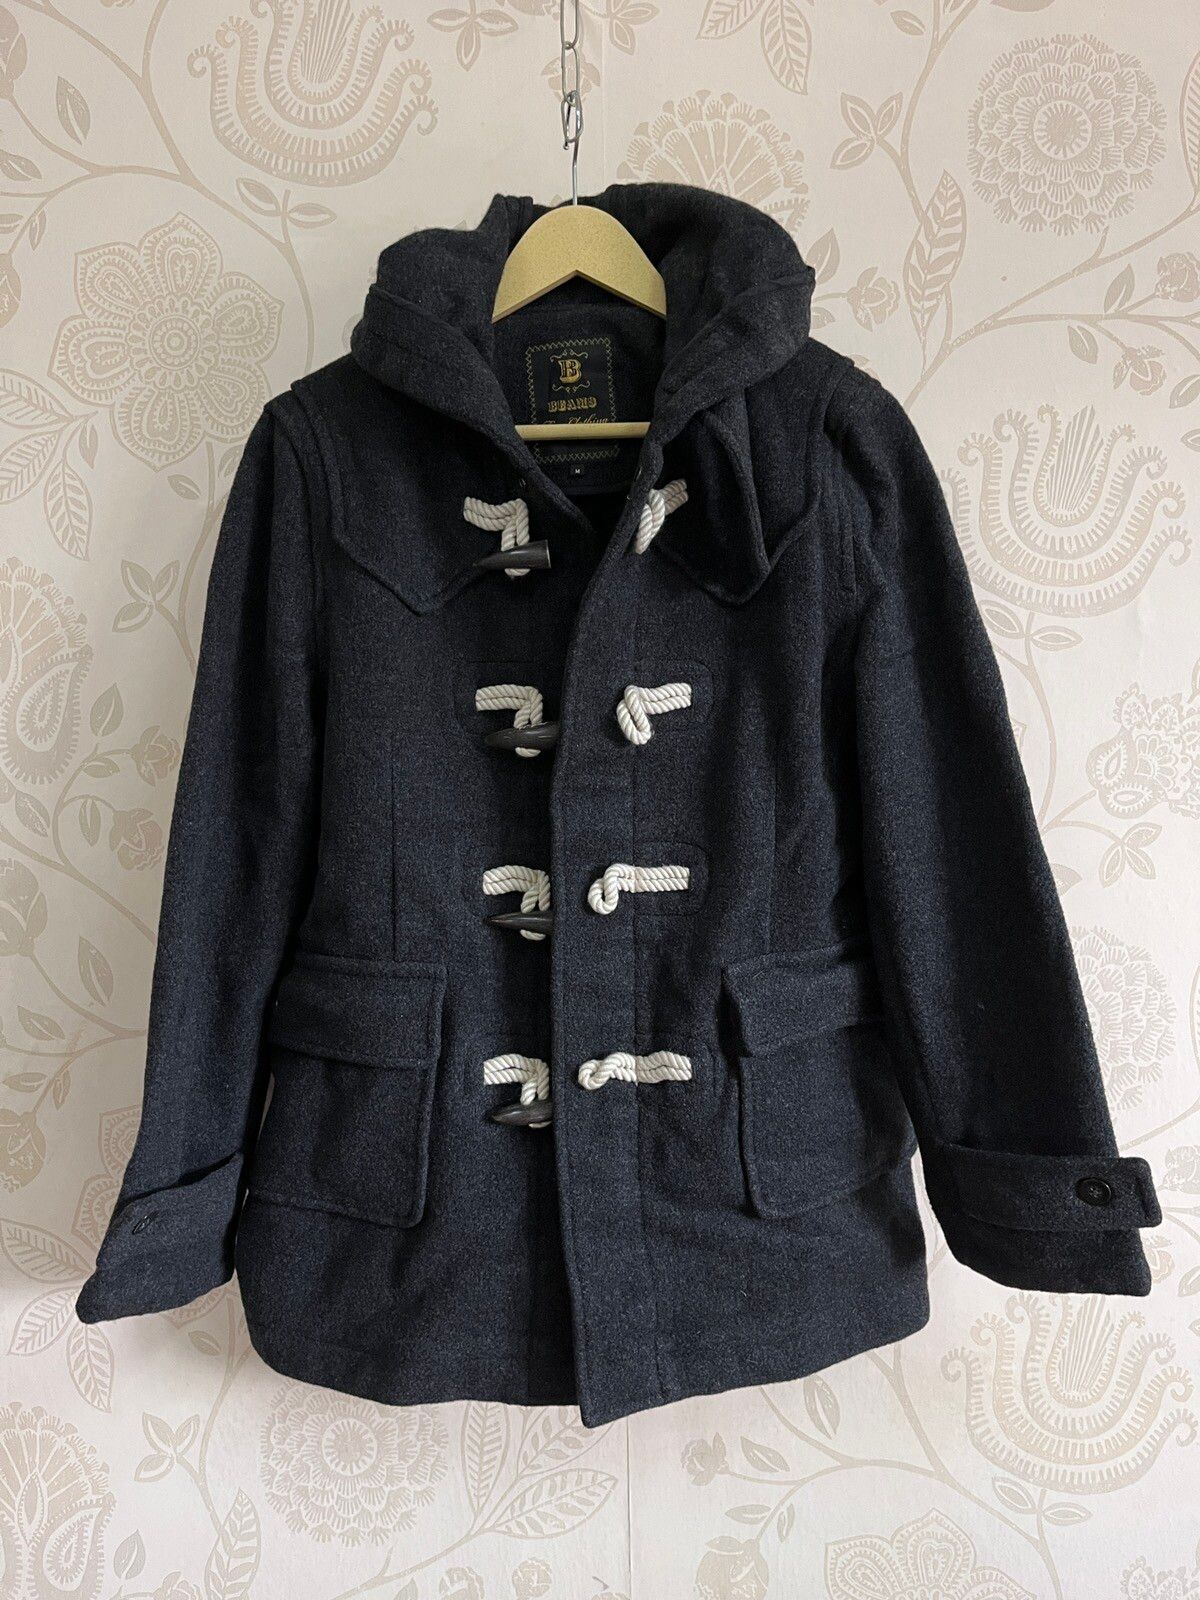 Beams Vintage 1980s Wool Hoodie Jacket Fine Clothing Japan - 1